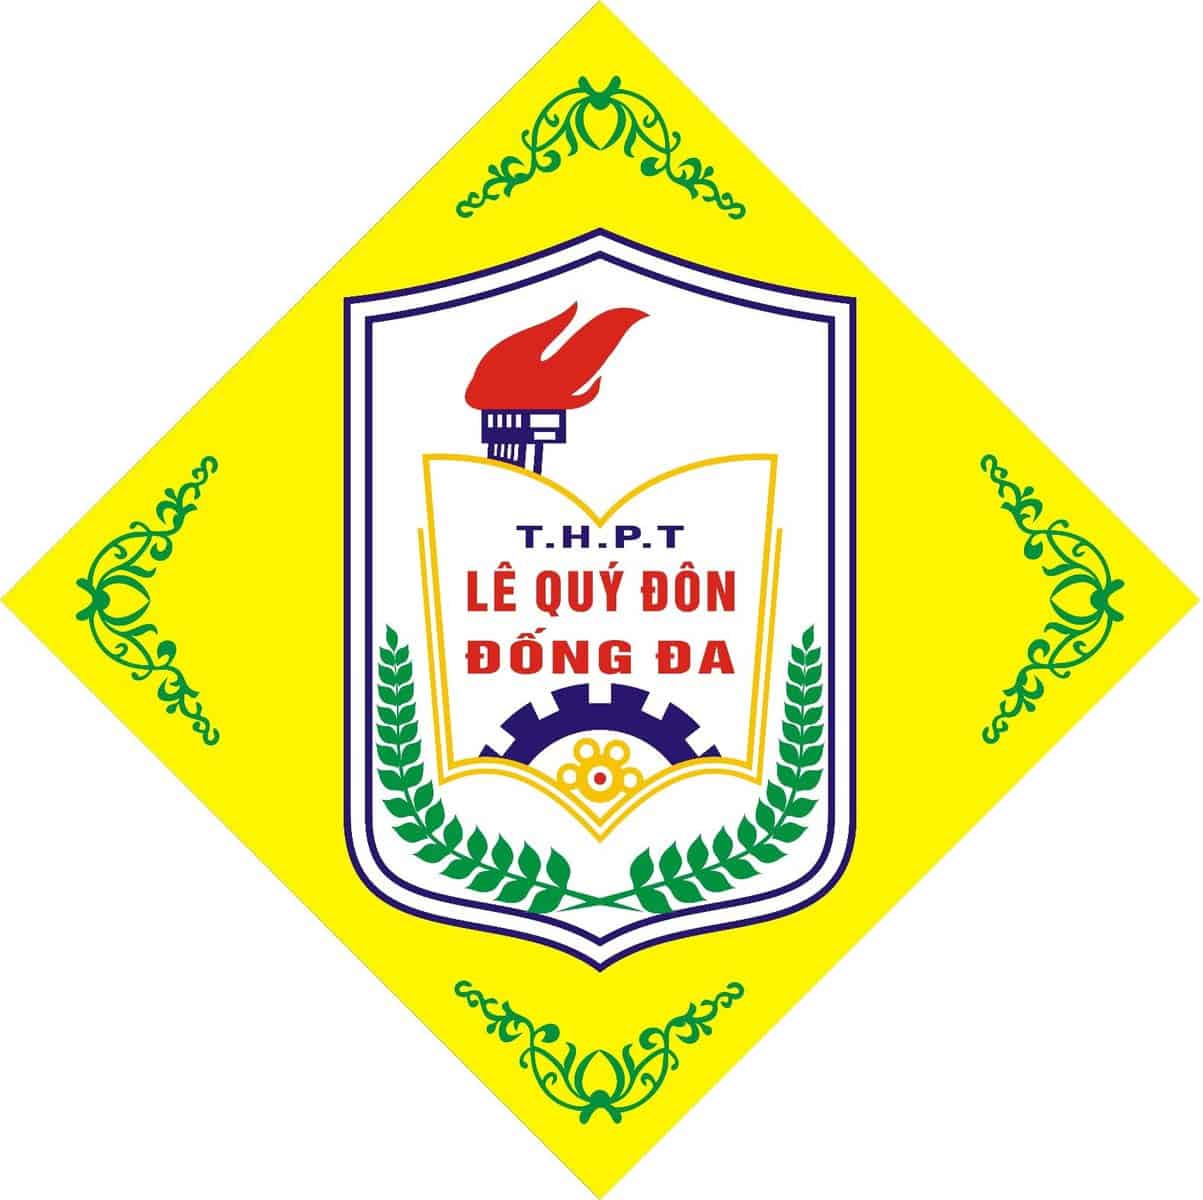 Mẫu logo màu vàng đặc trưng của trường THPT Lê Quý Đôn